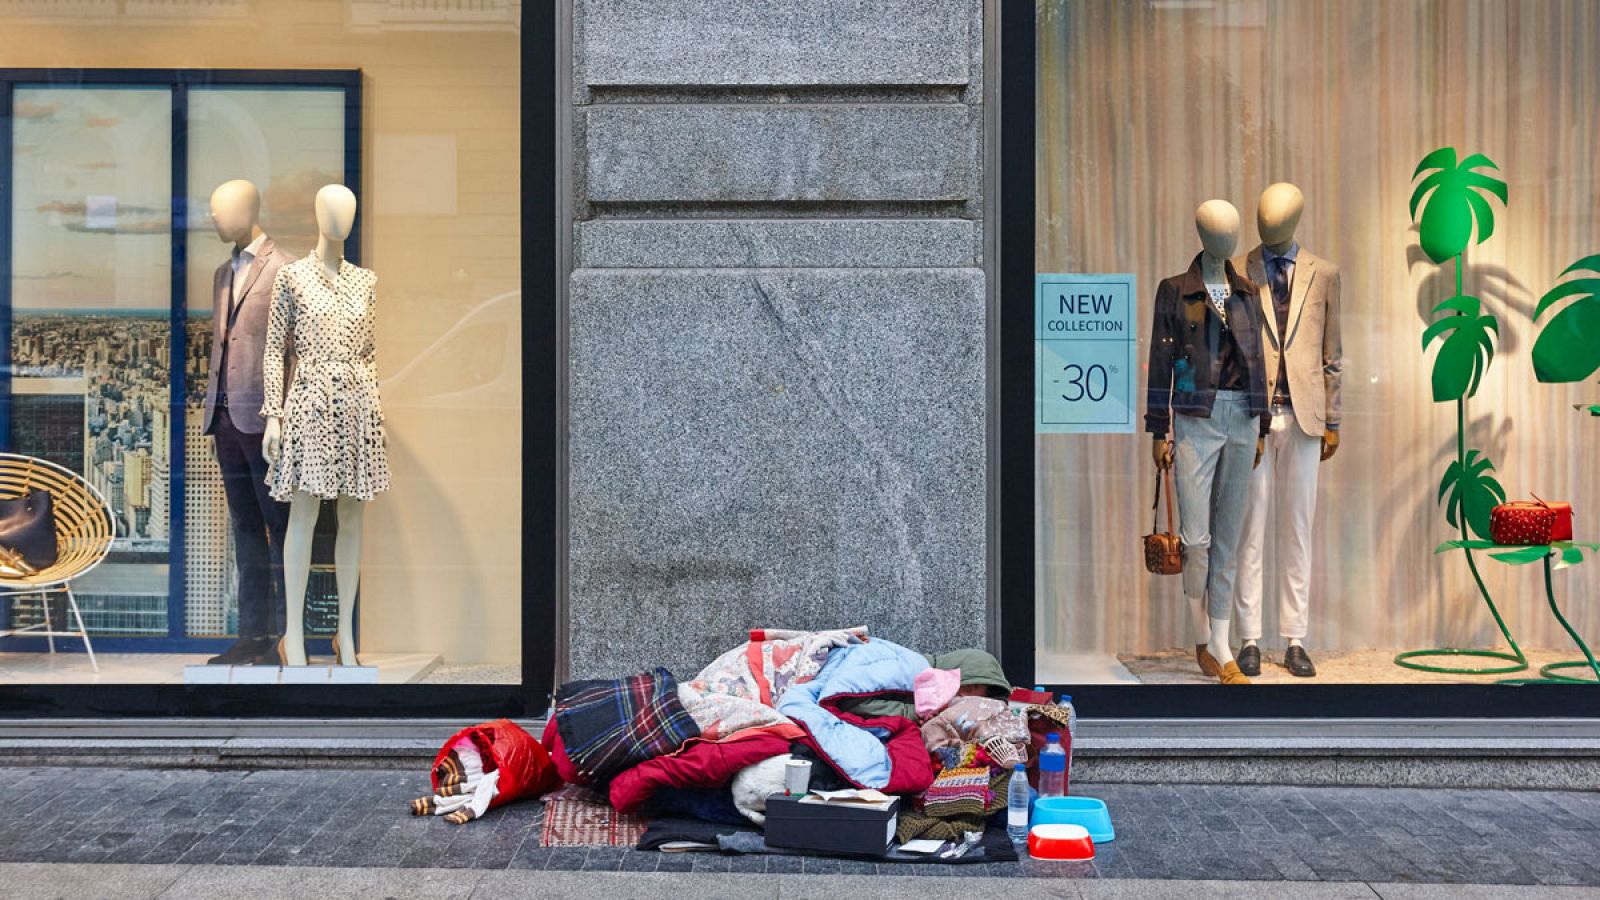 Una mujer duerme en la acera de una gran ciudad bajo los esaparates de una tienda de moda.